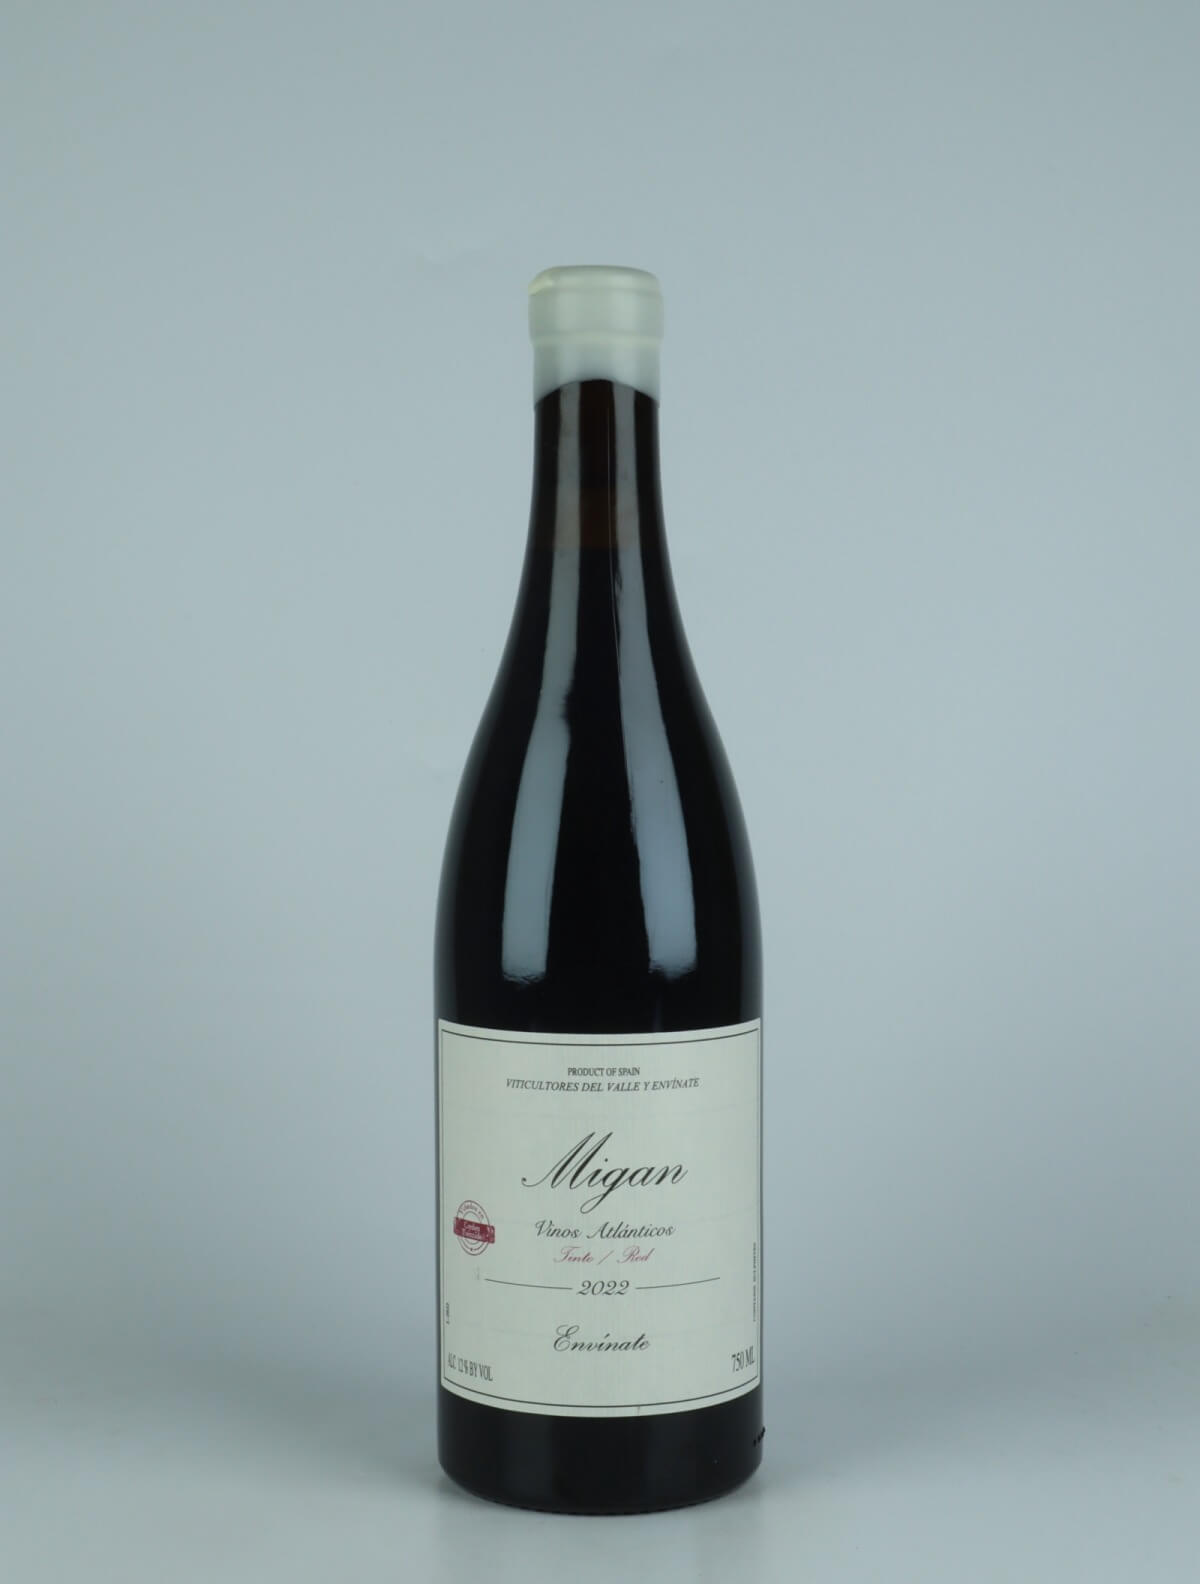 En flaske 2022 Migan - Tenerife Rødvin fra Envínate, Tenerife i Spanien